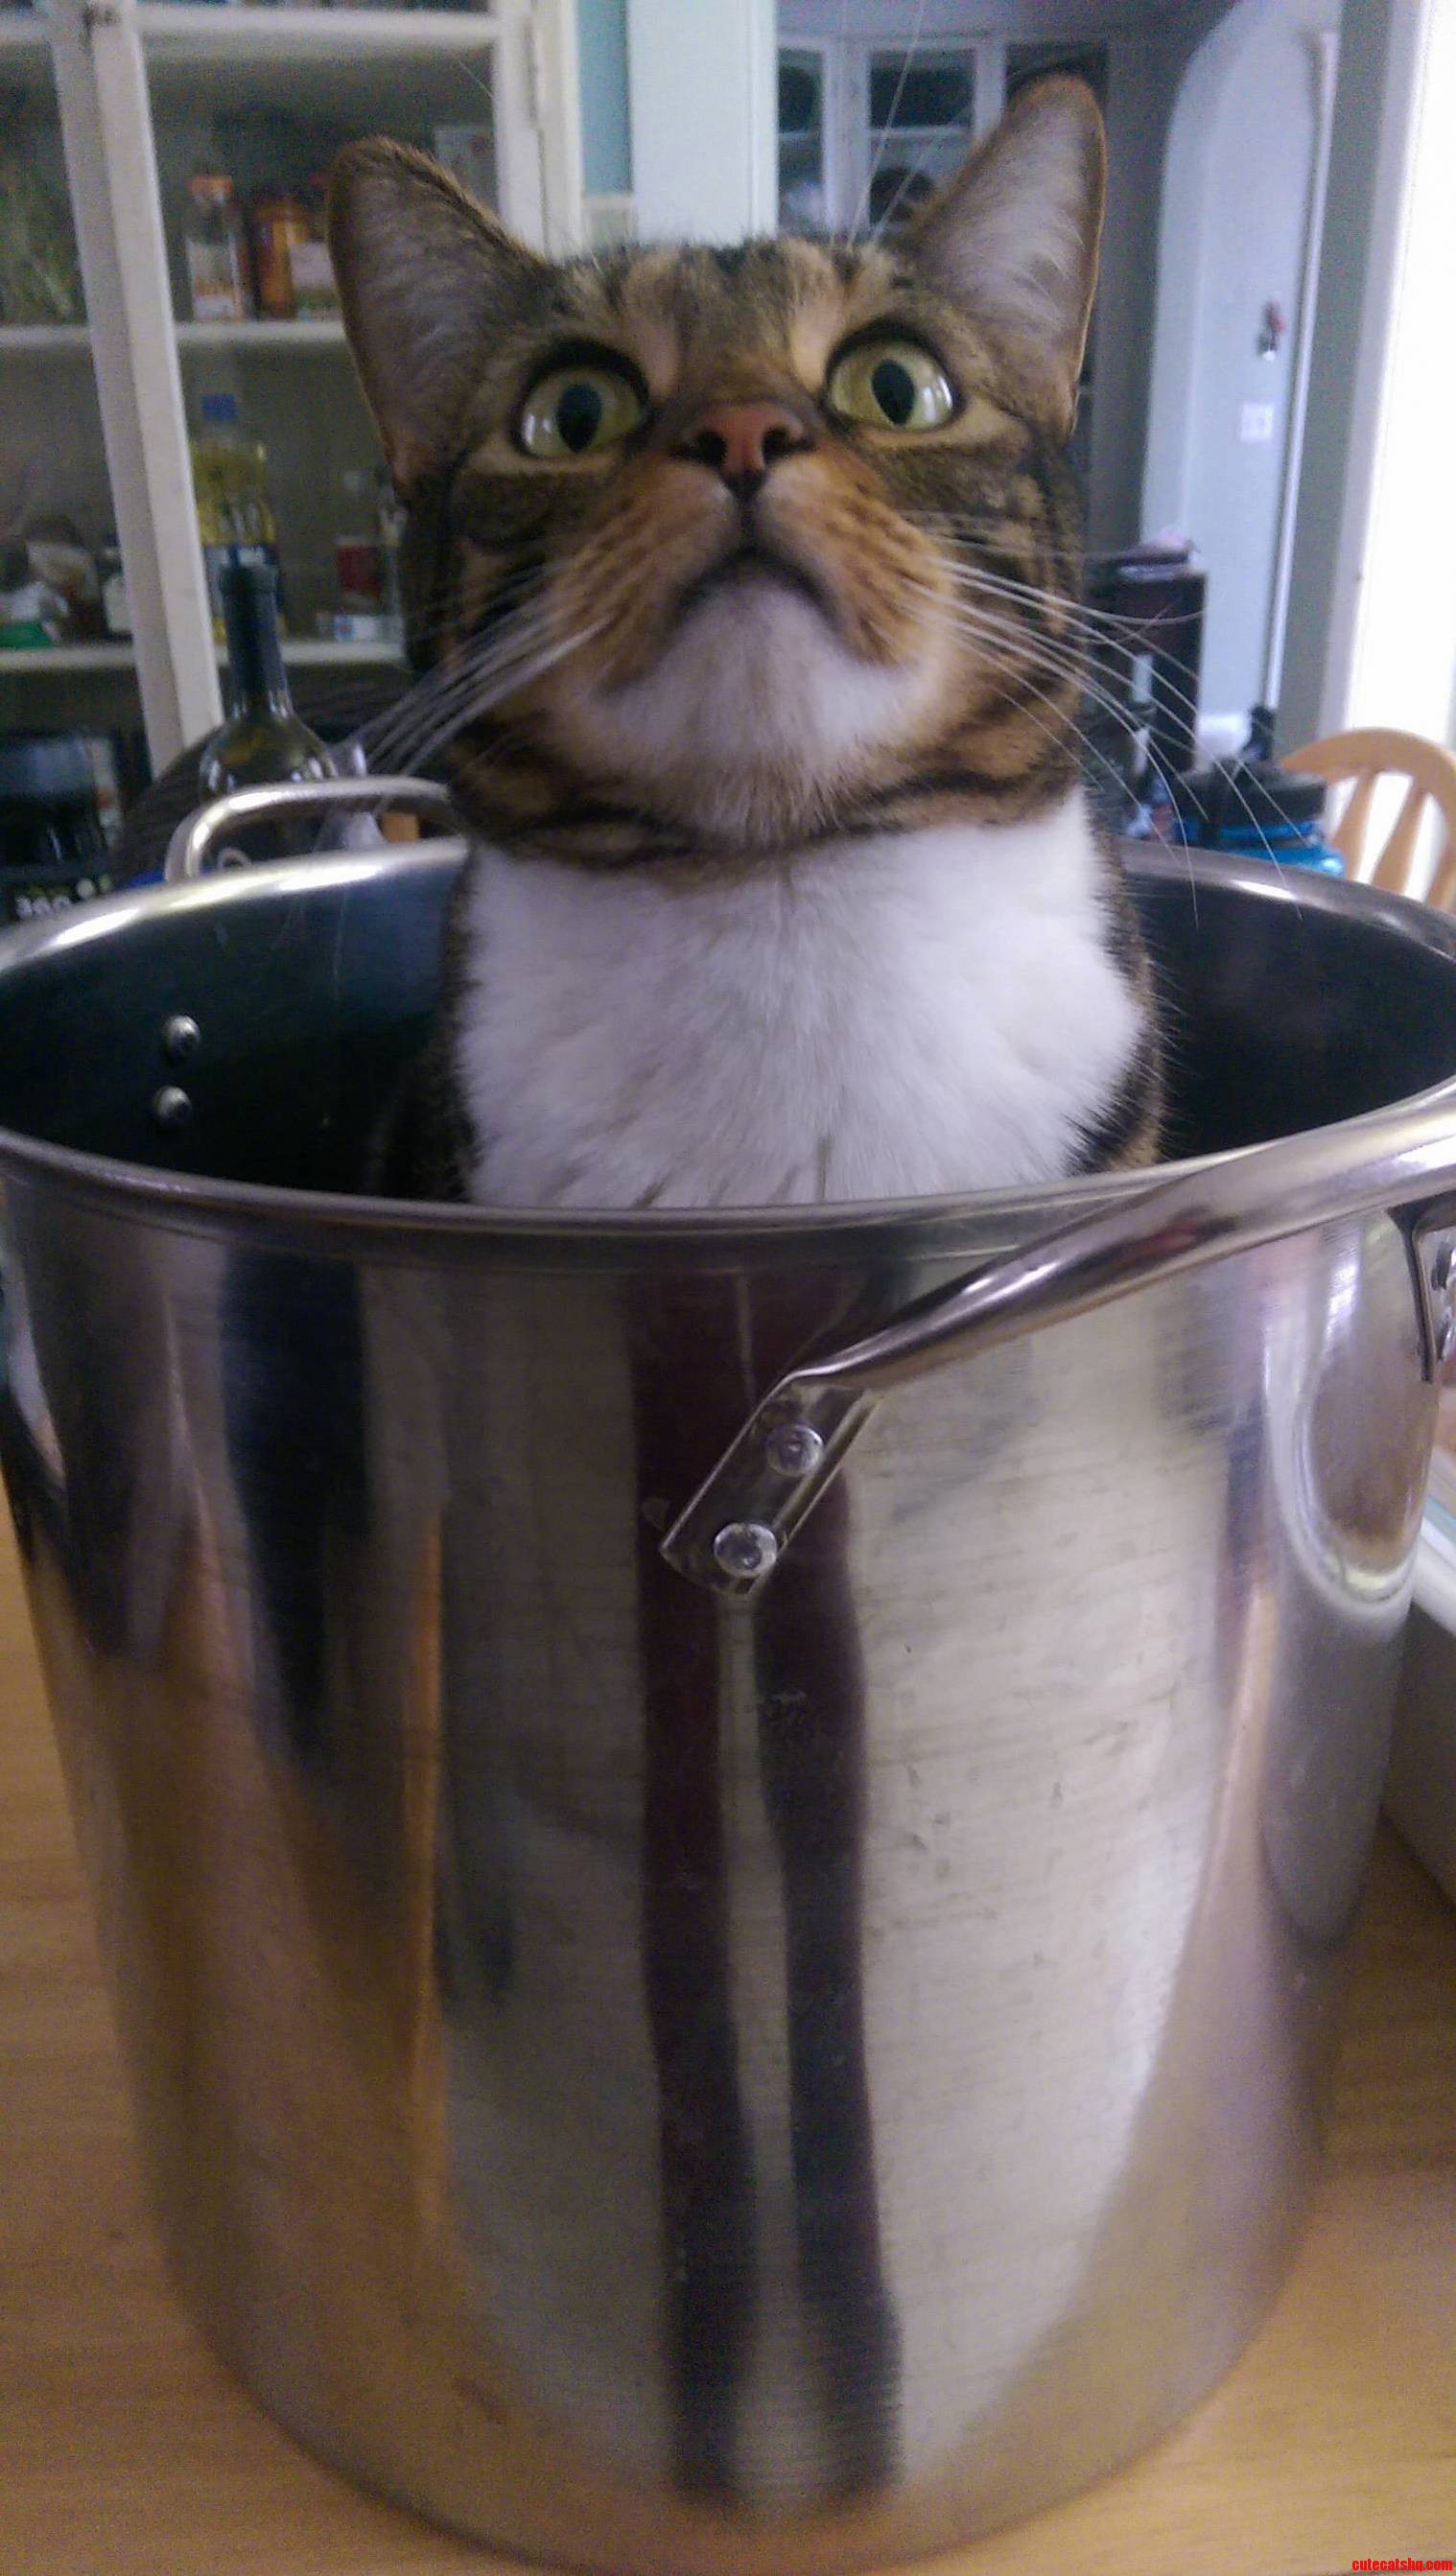 My cat likes pot